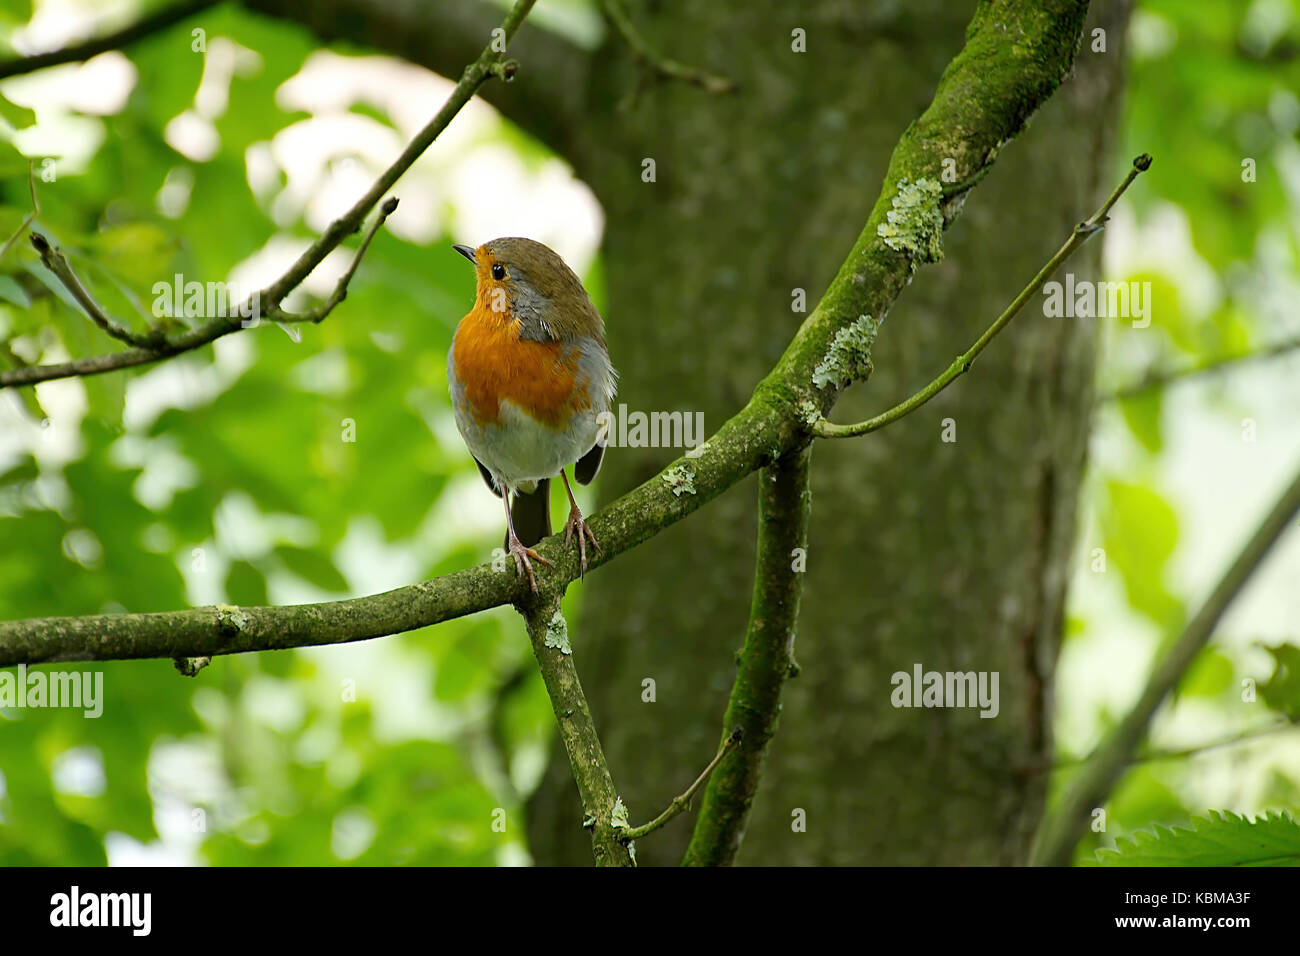 Unione robin, Erithacus rubecula,seduto sul ramo di albero con la testa girata verso destra.Westport lago riserva naturale vicino a Stoke on Trent, Regno Unito. Foto Stock